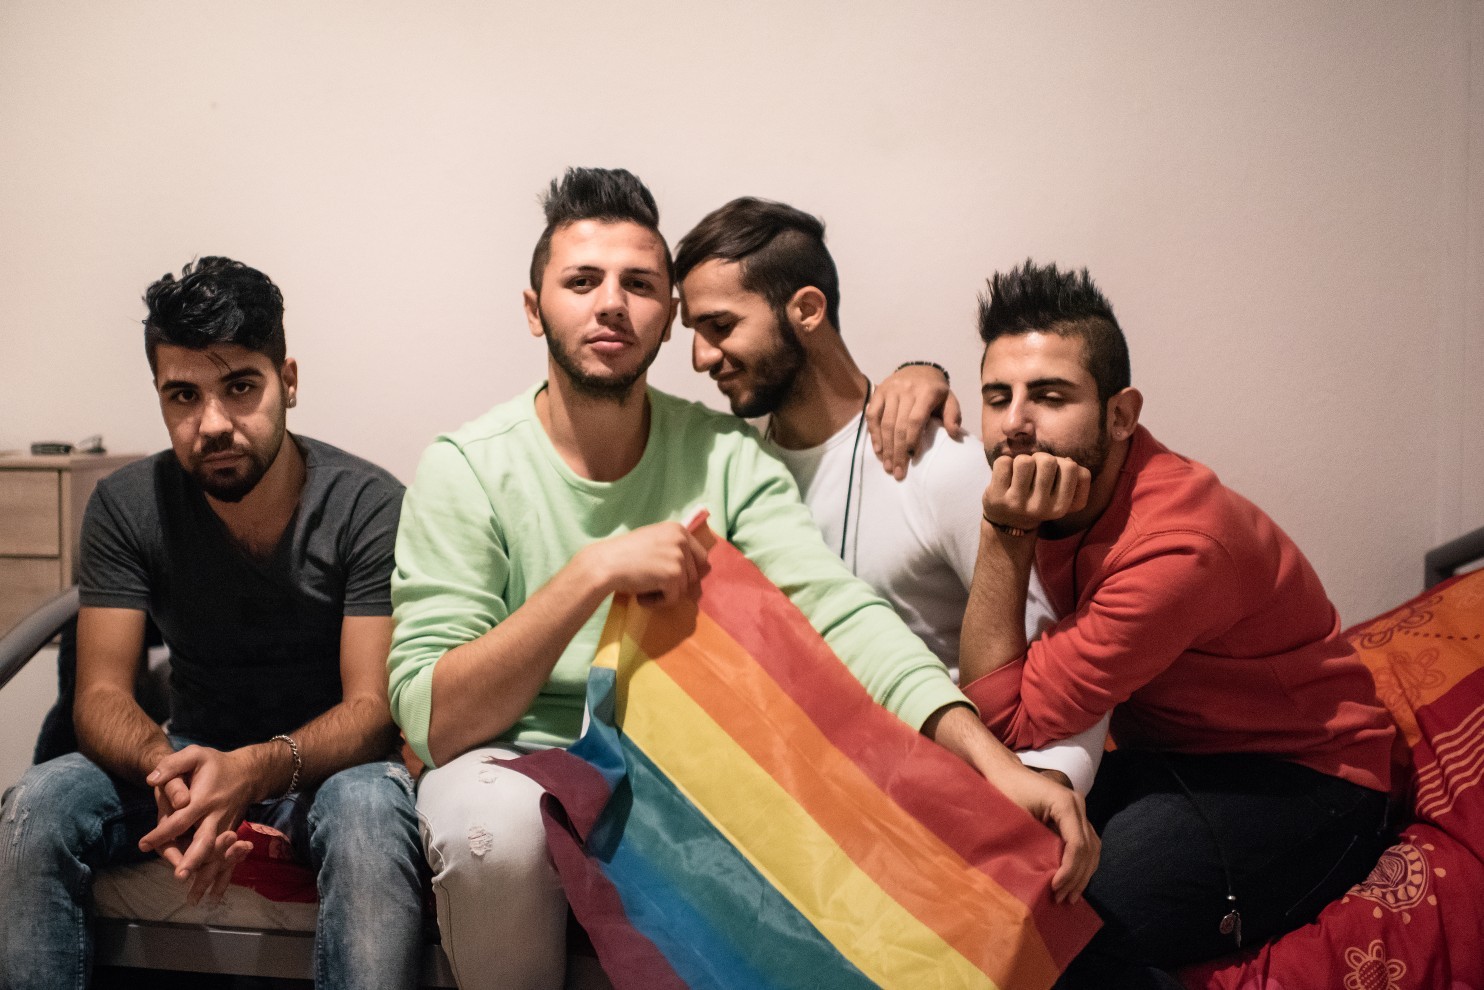 مثليو الجنس يتعرضون لمضايقات داخل ملاجىء ومخيمات اللجوء في ألمانيا watan.com